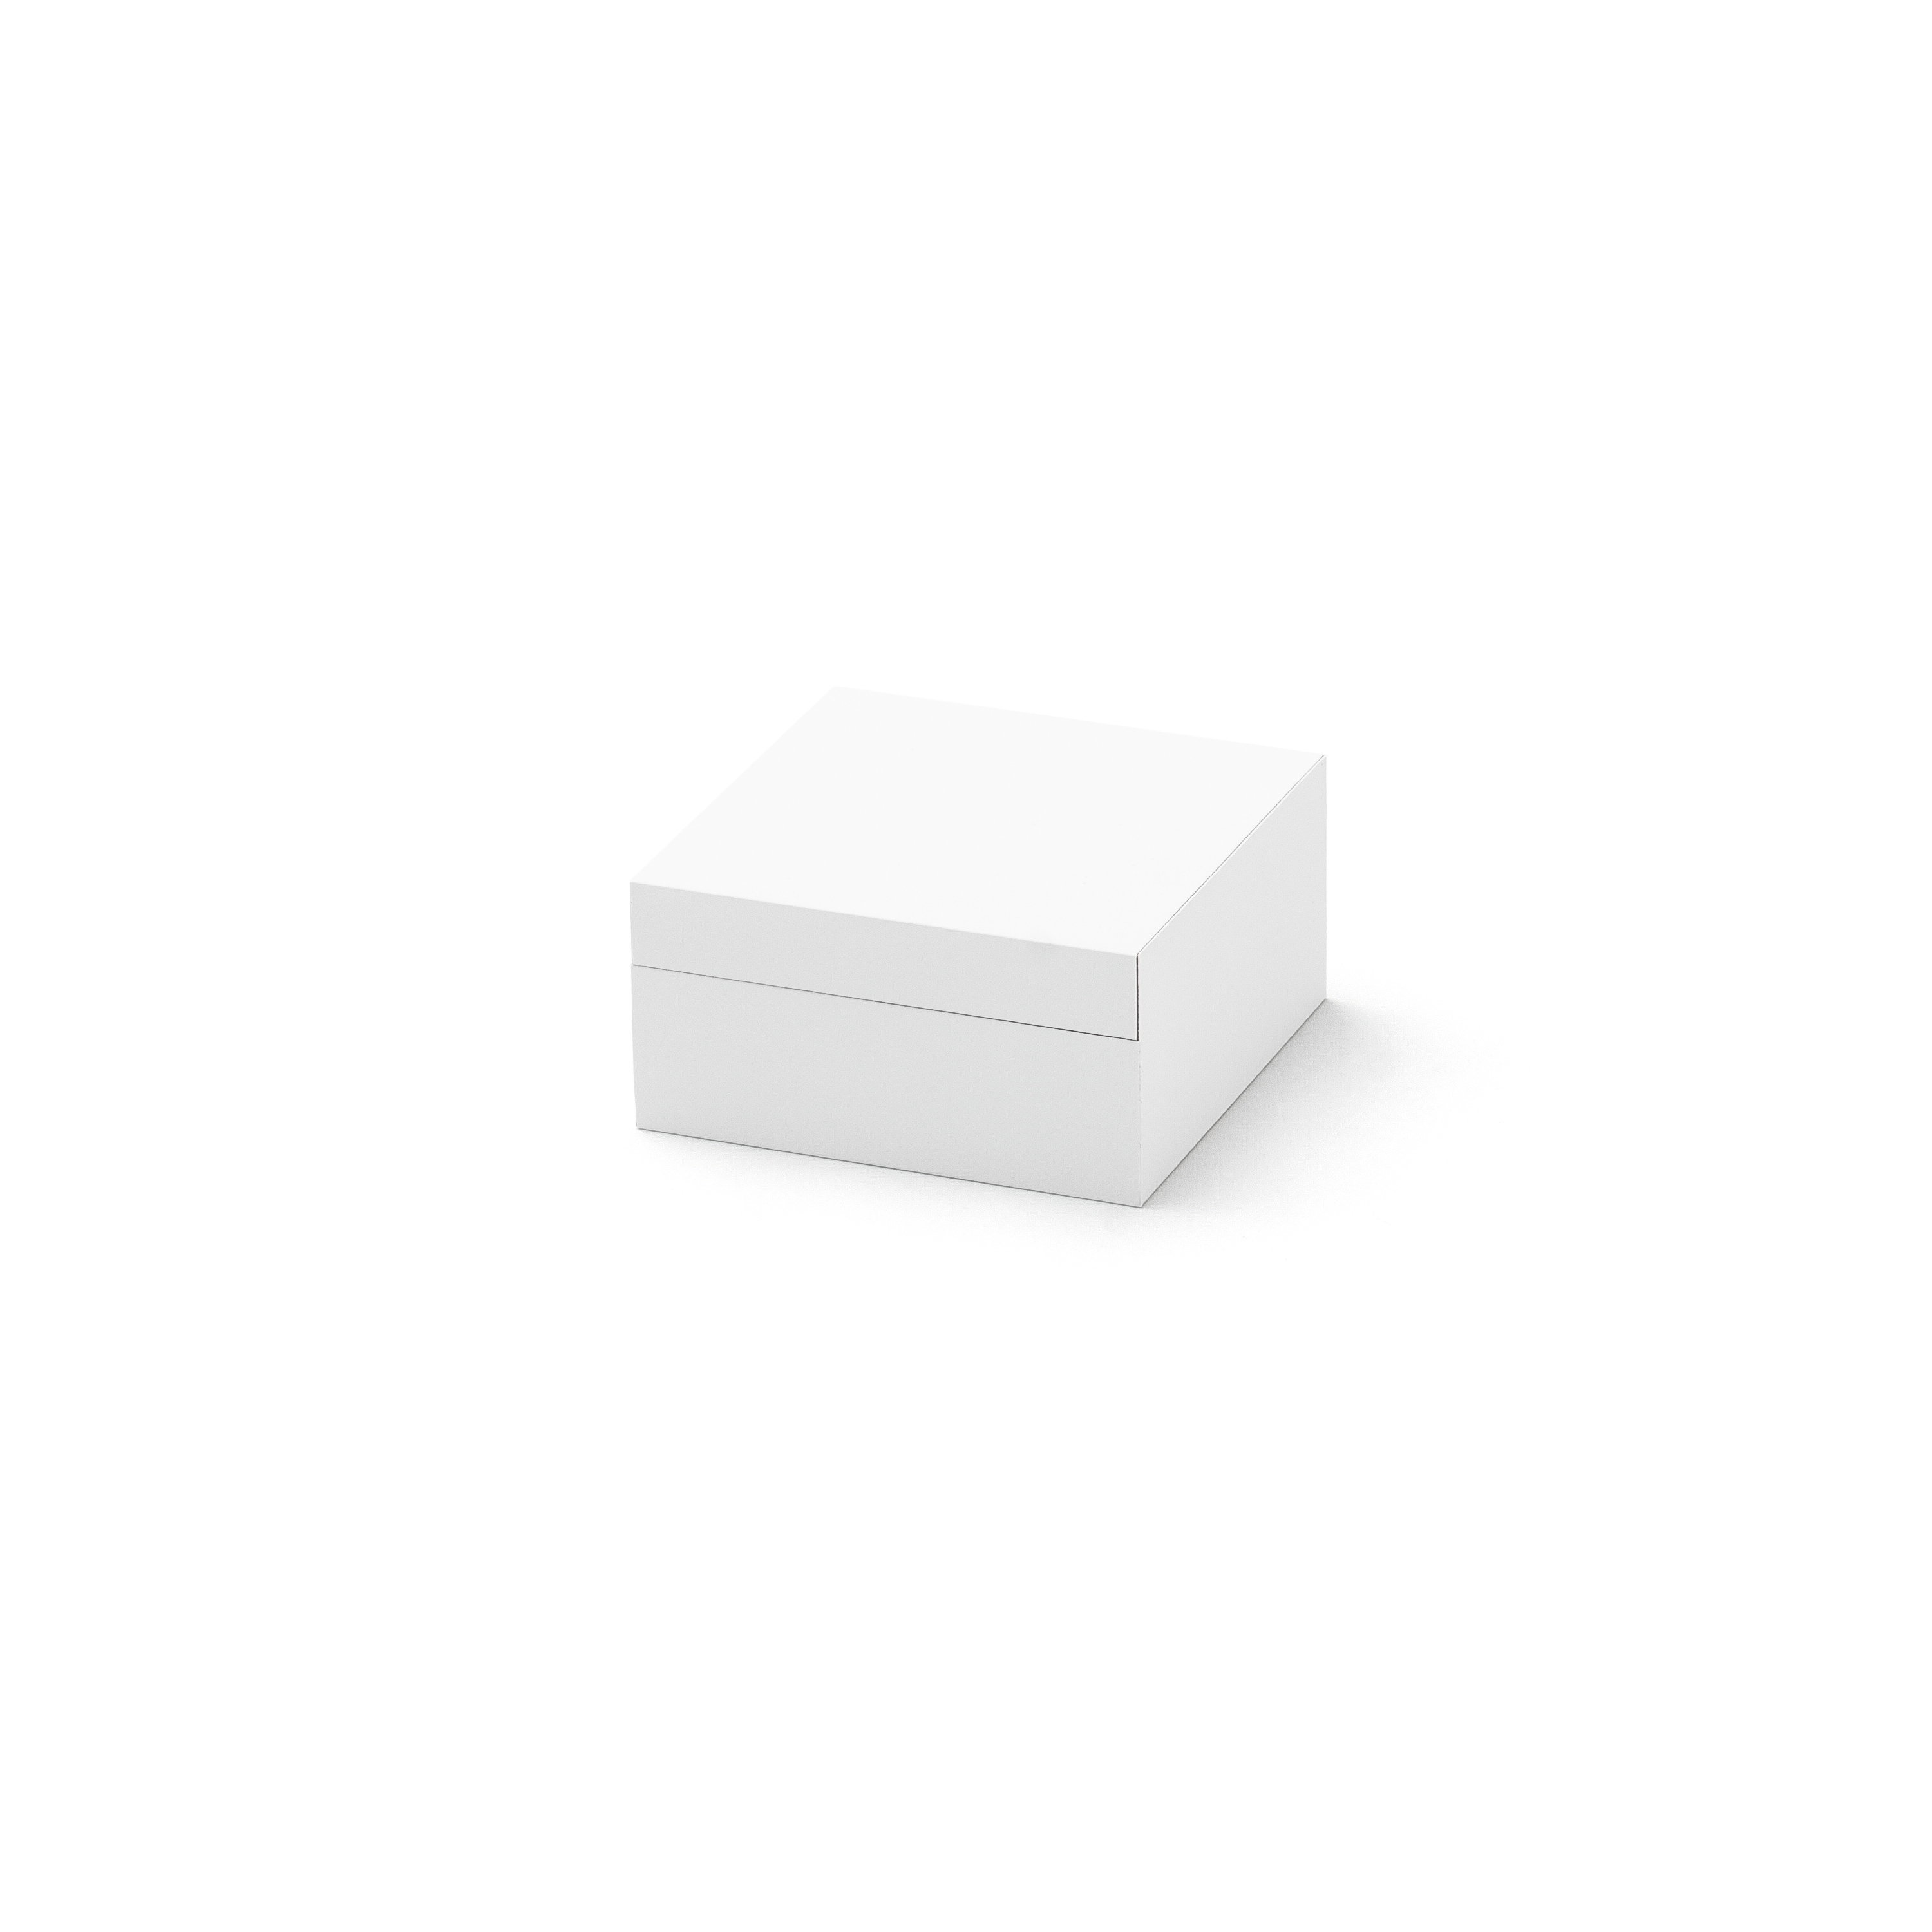 Whitebox Universal klein, 60 x 60 x 30 mm